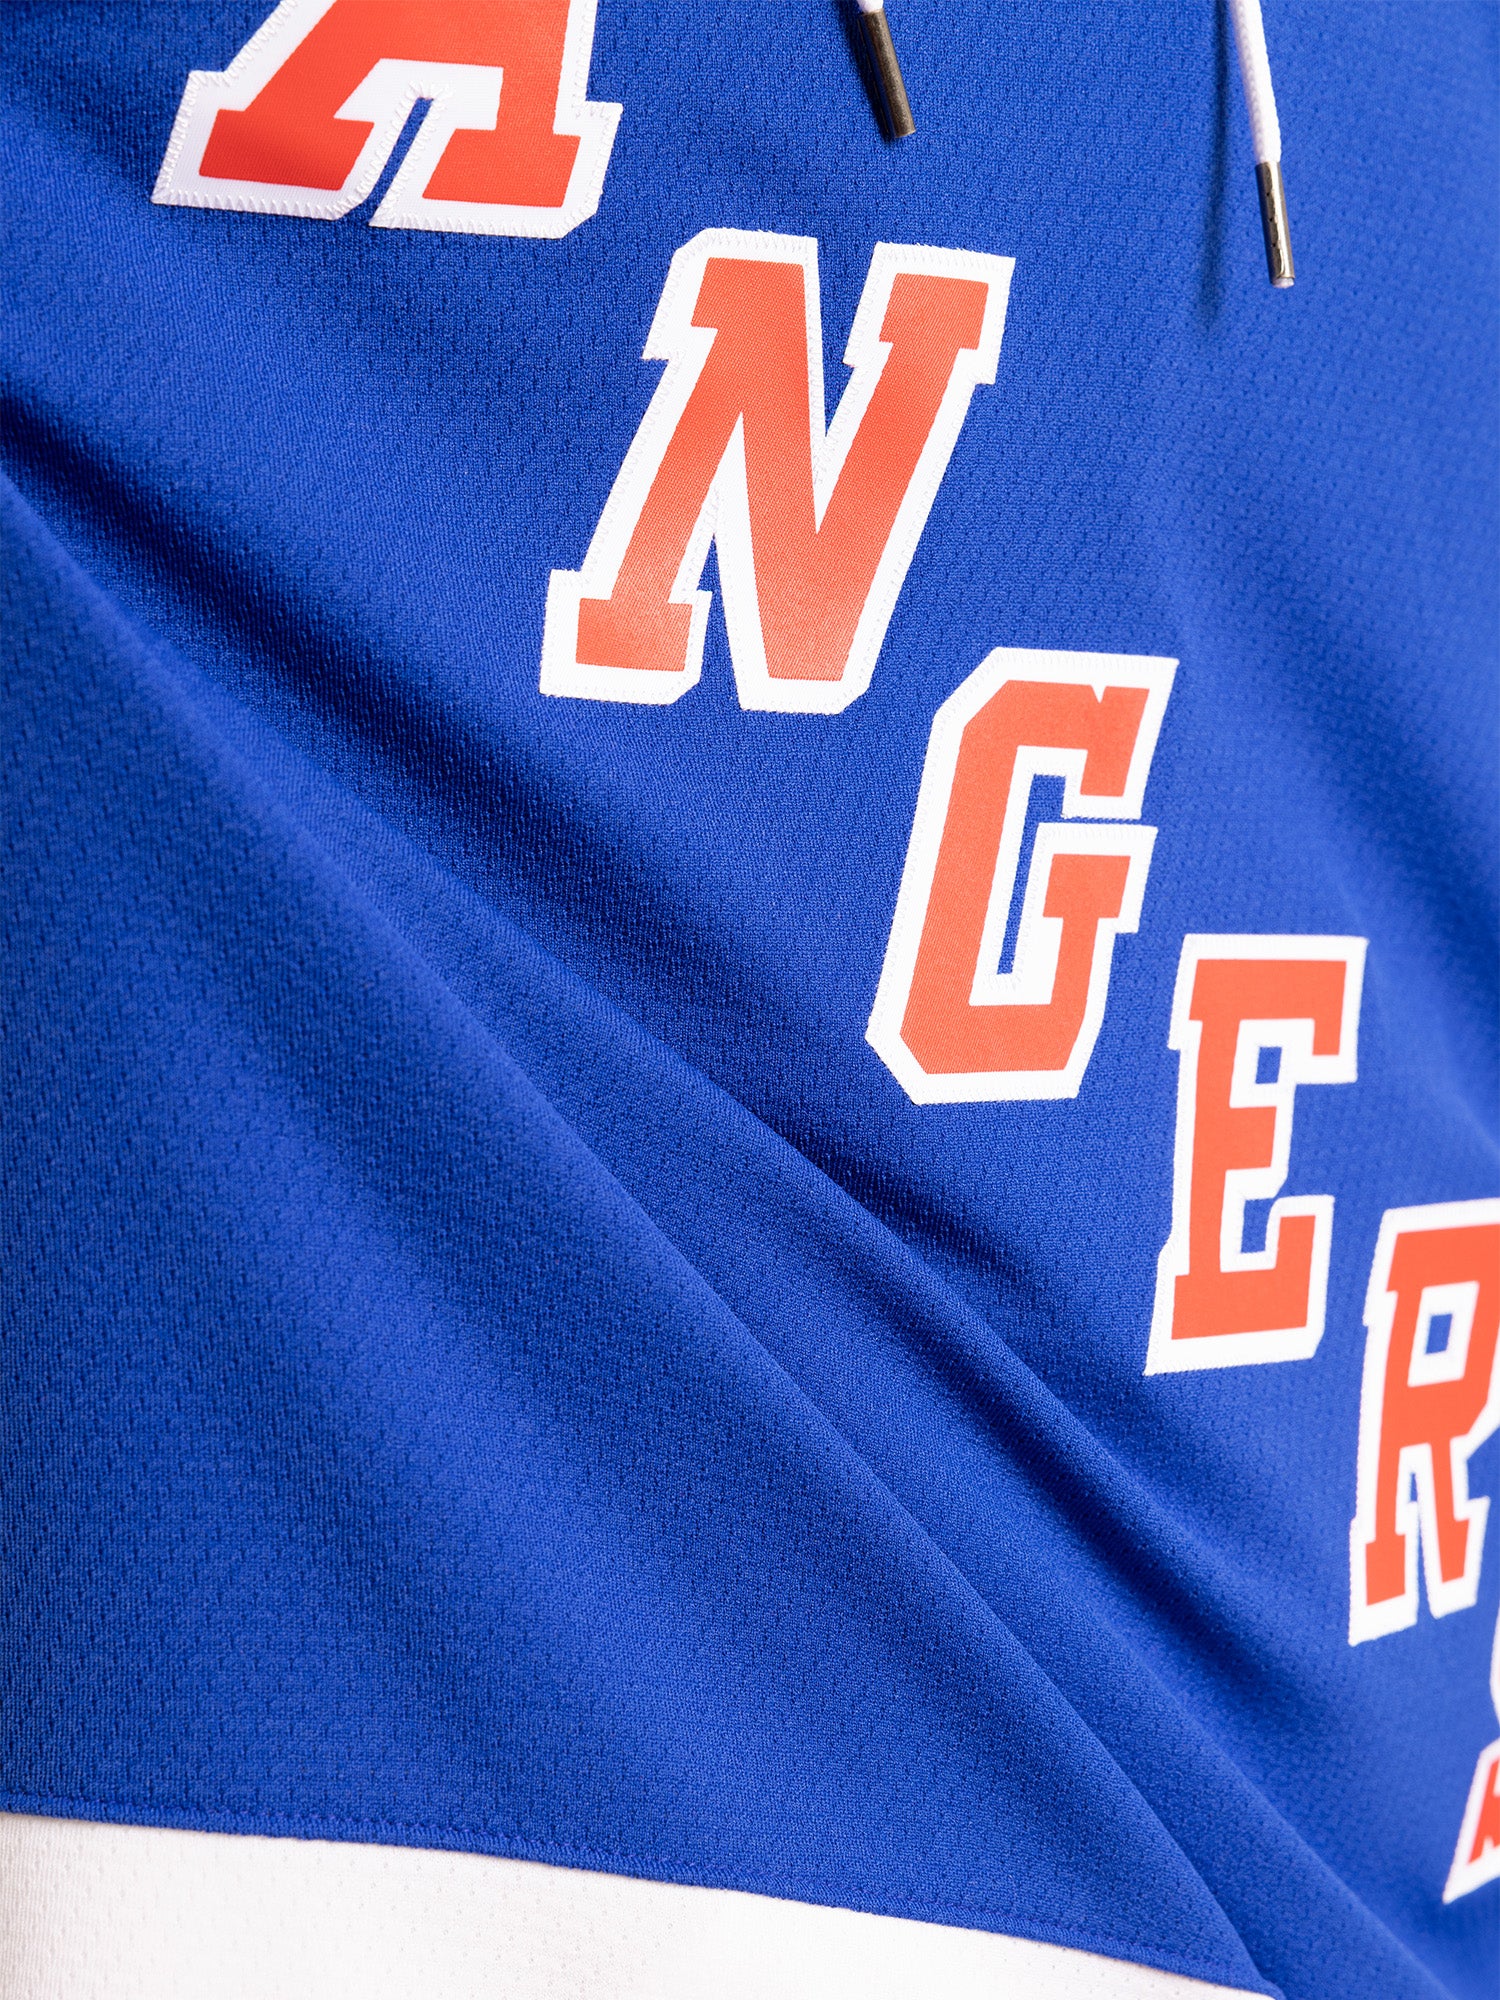 Mitchell & Ness Blue Line Adam Fox New York Rangers 2021 Jersey